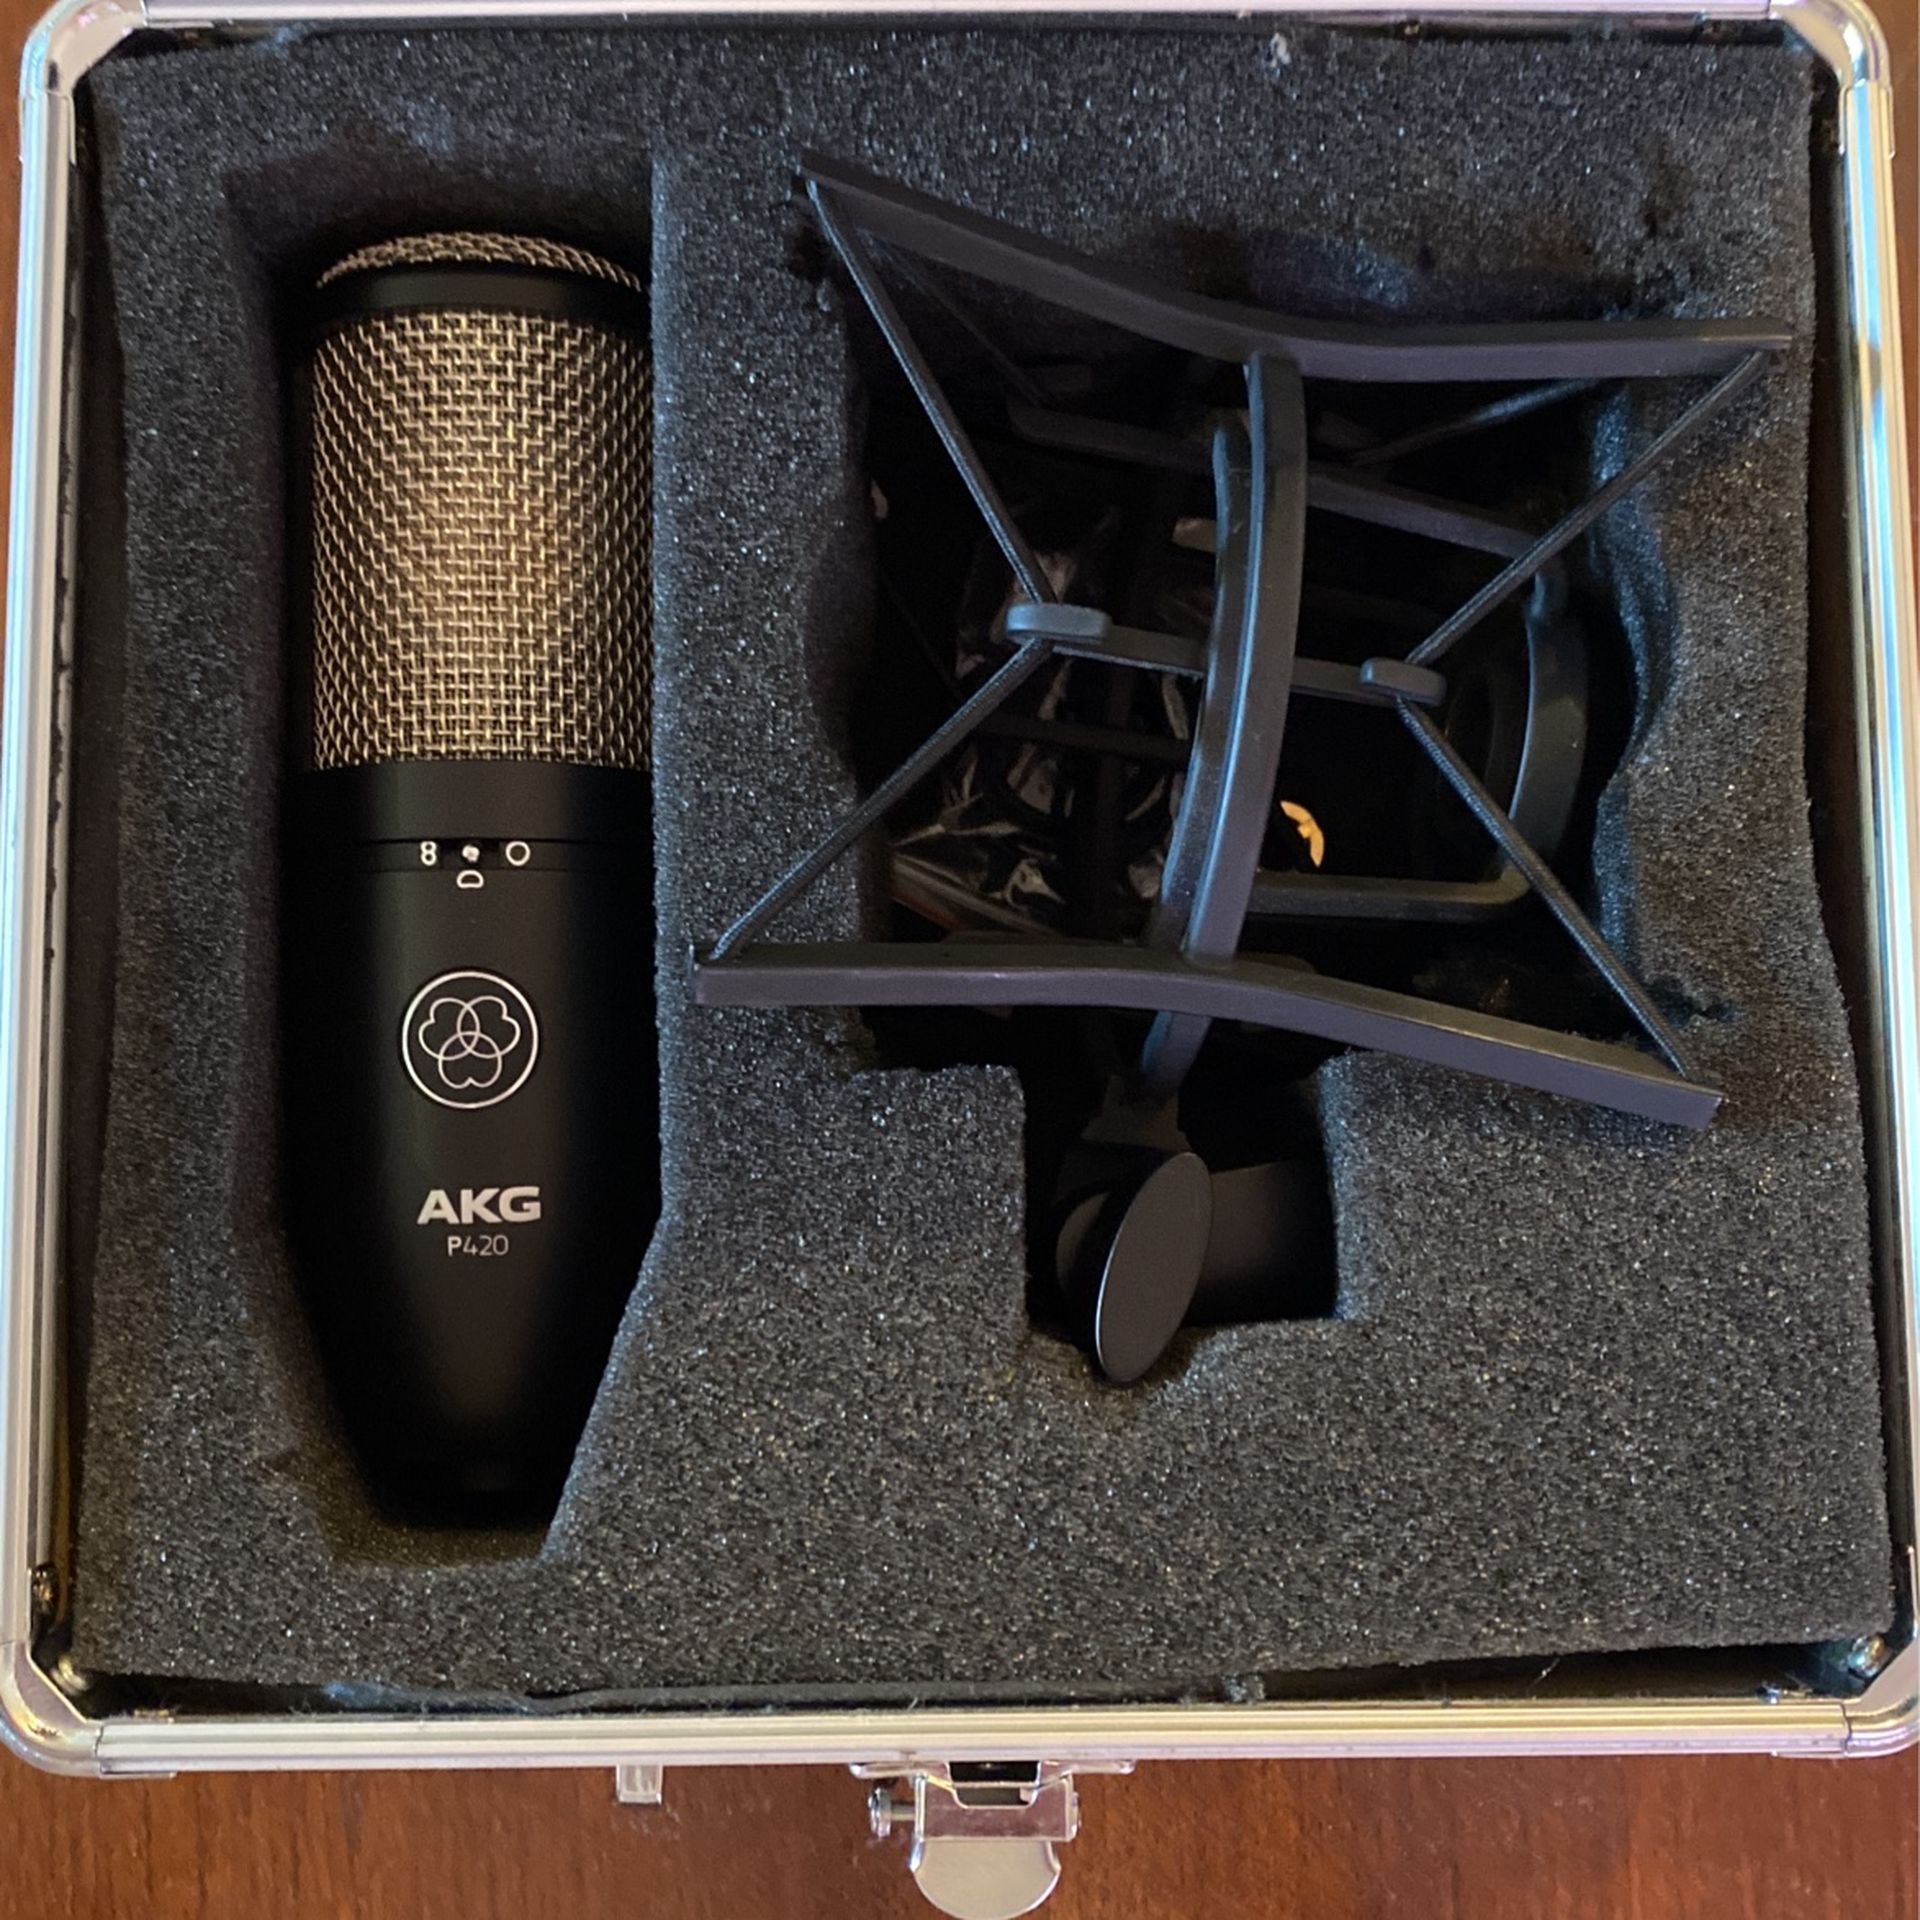 AKG Recording Microphone (akg P420)